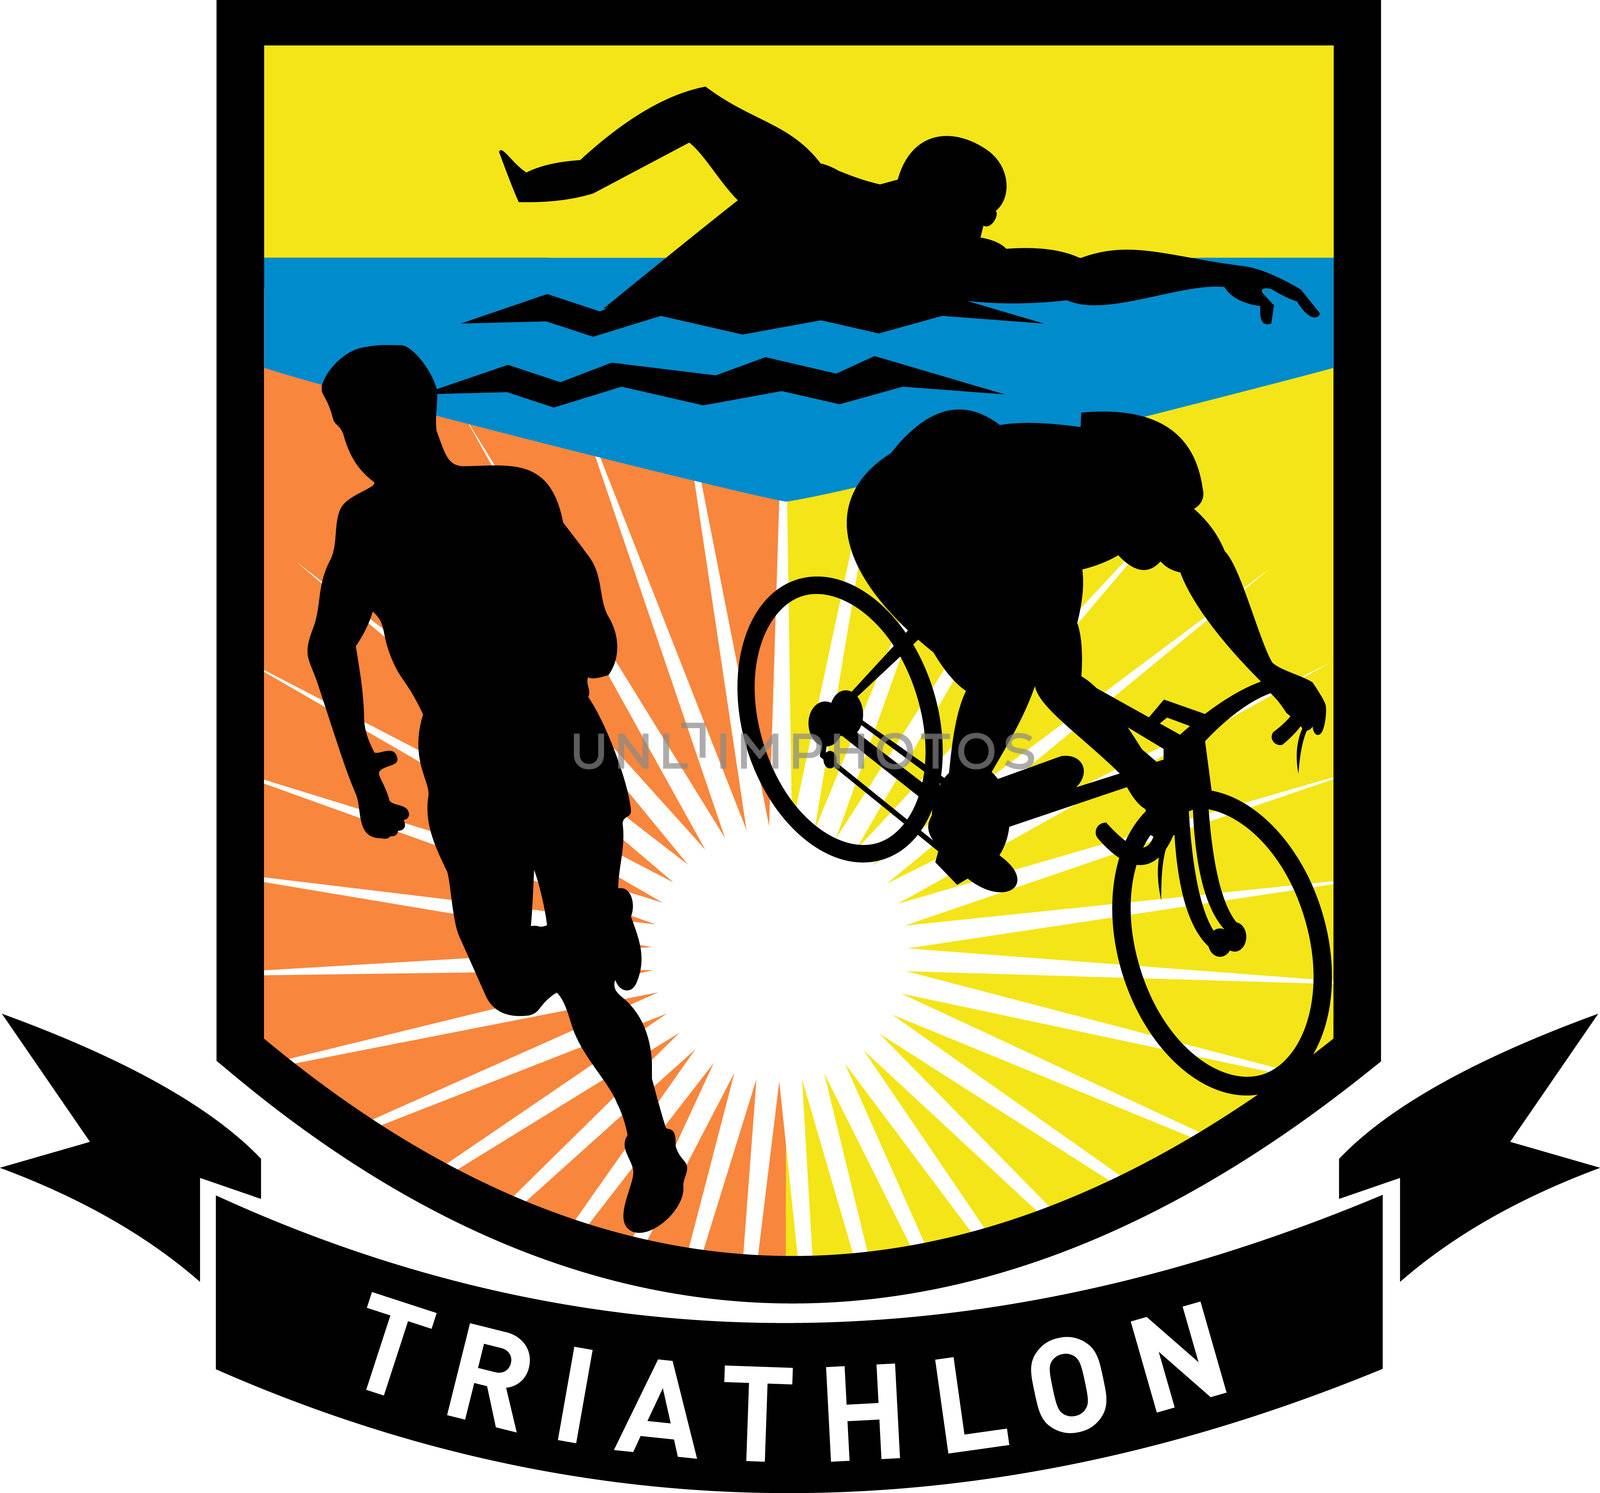 triathlon swim bike run race by patrimonio